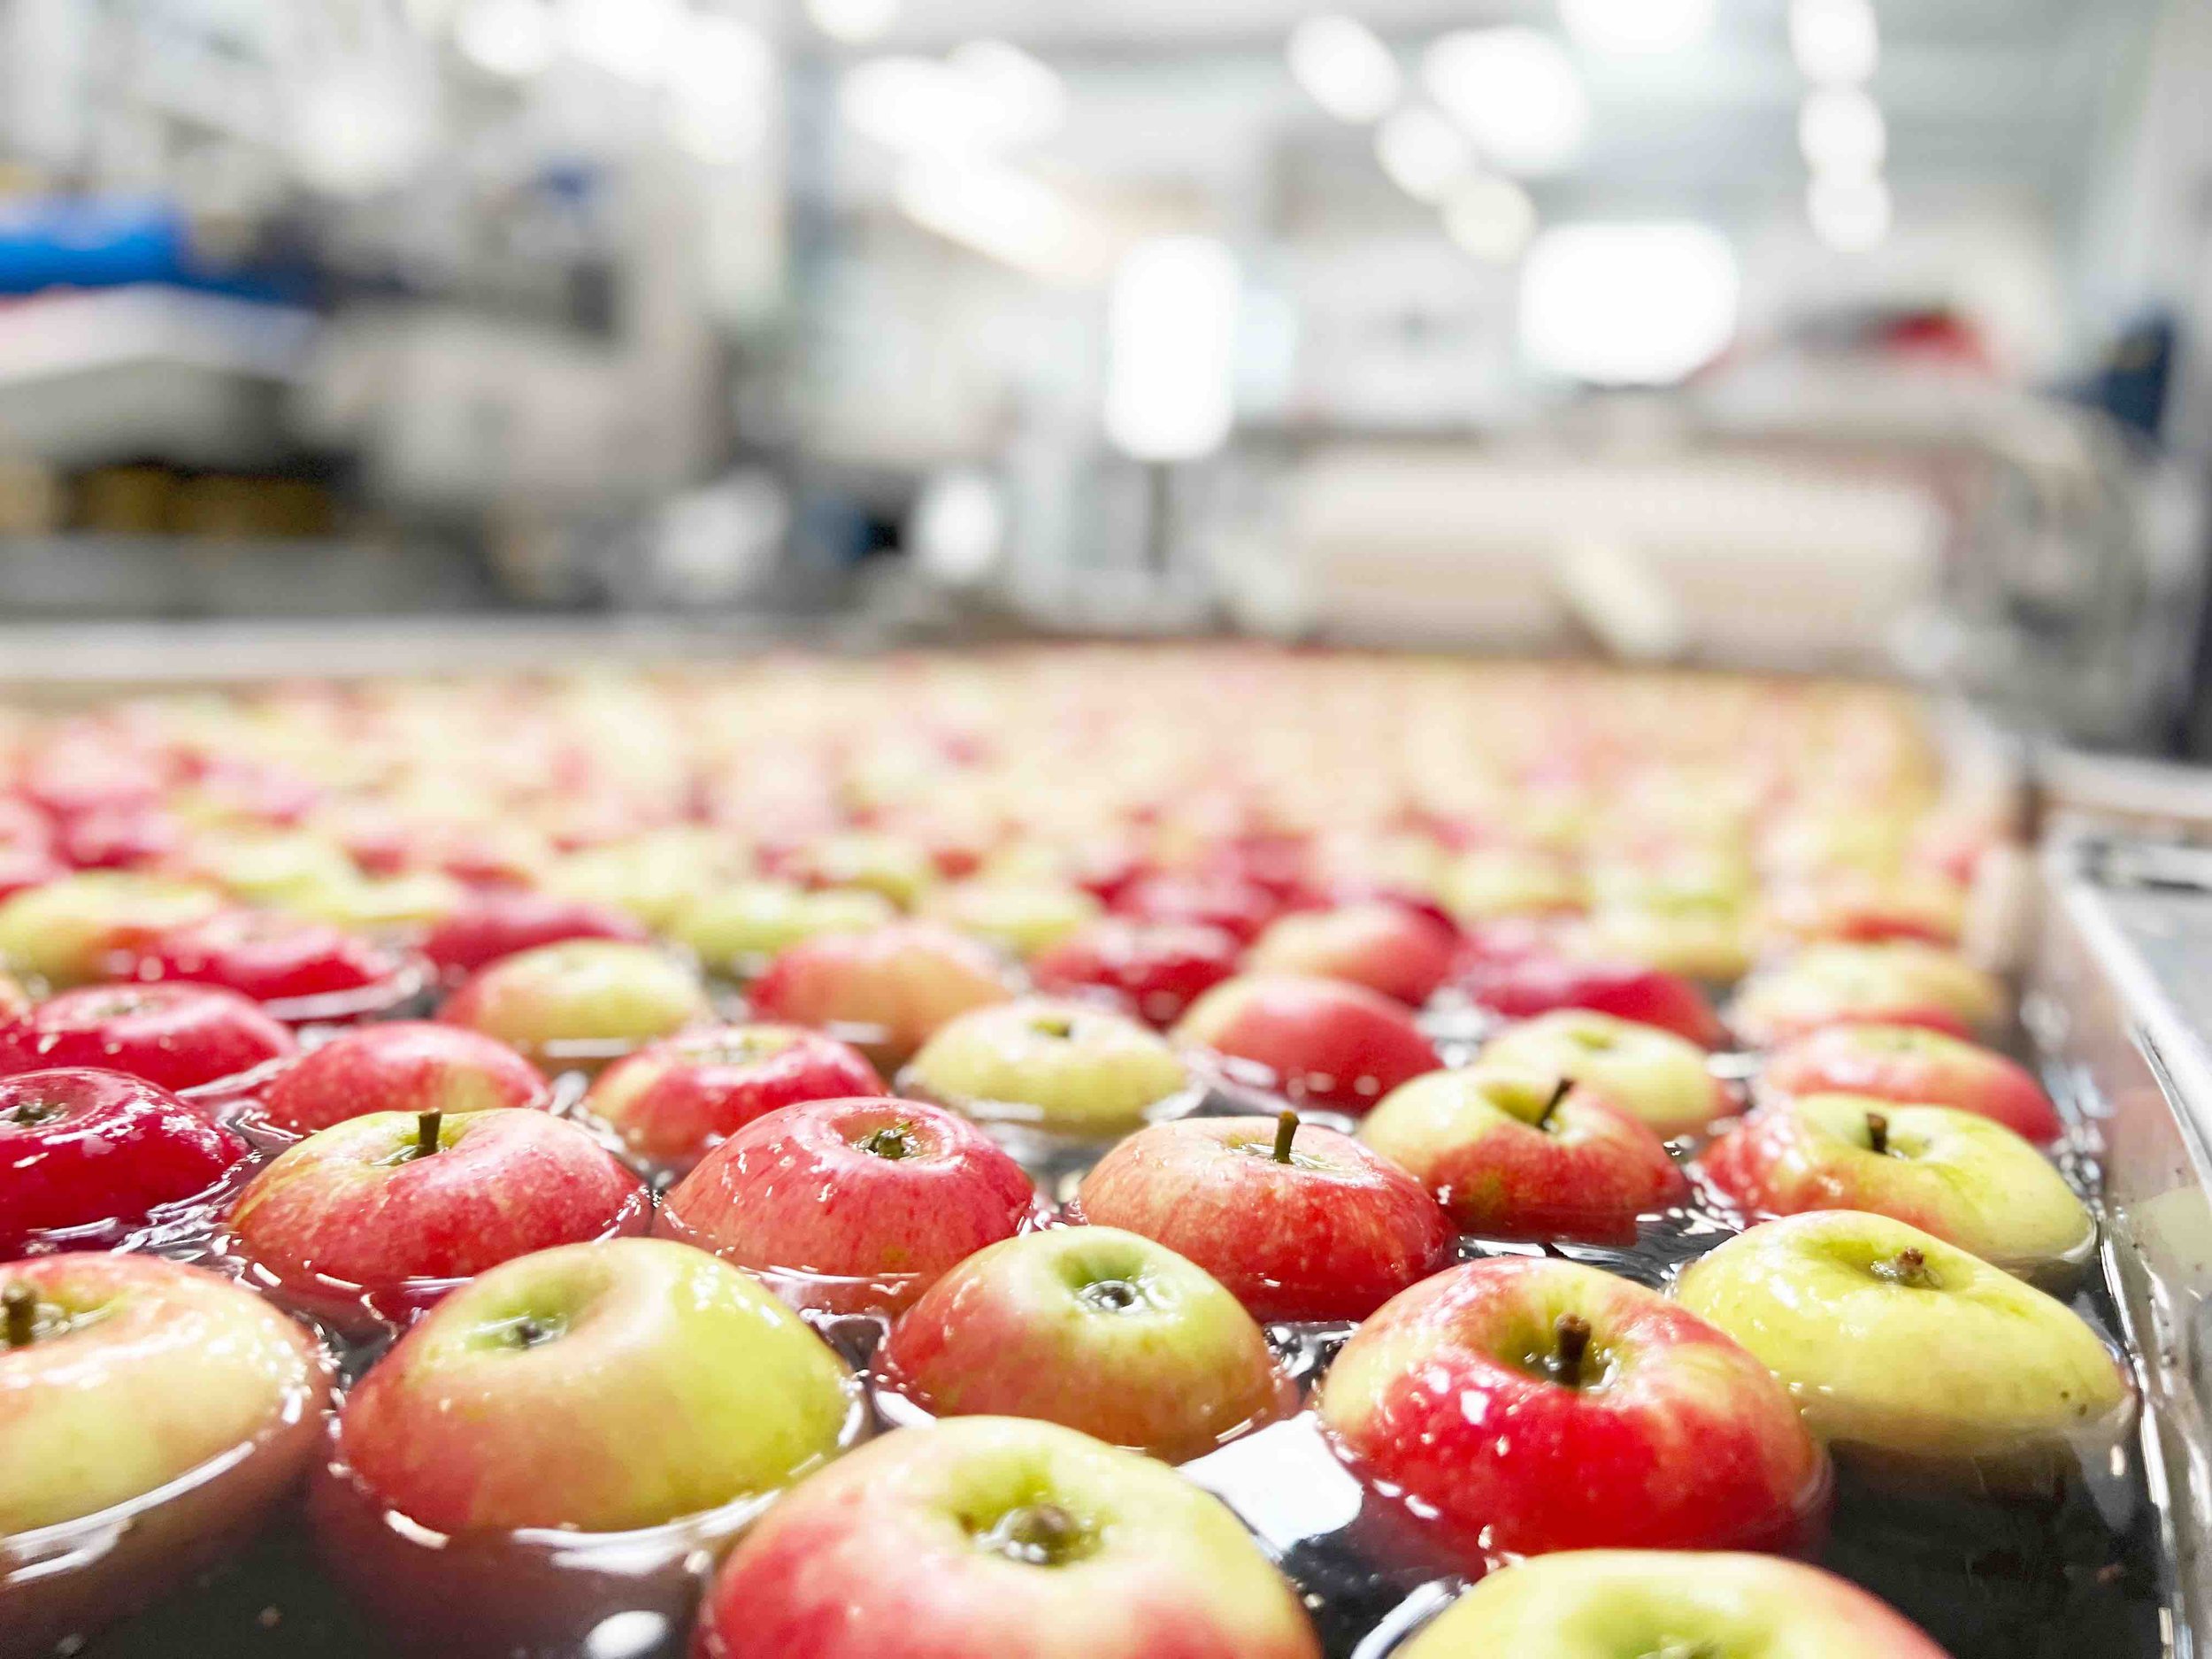 Duńskie jabłka są sortowane w zakładzie w Oure